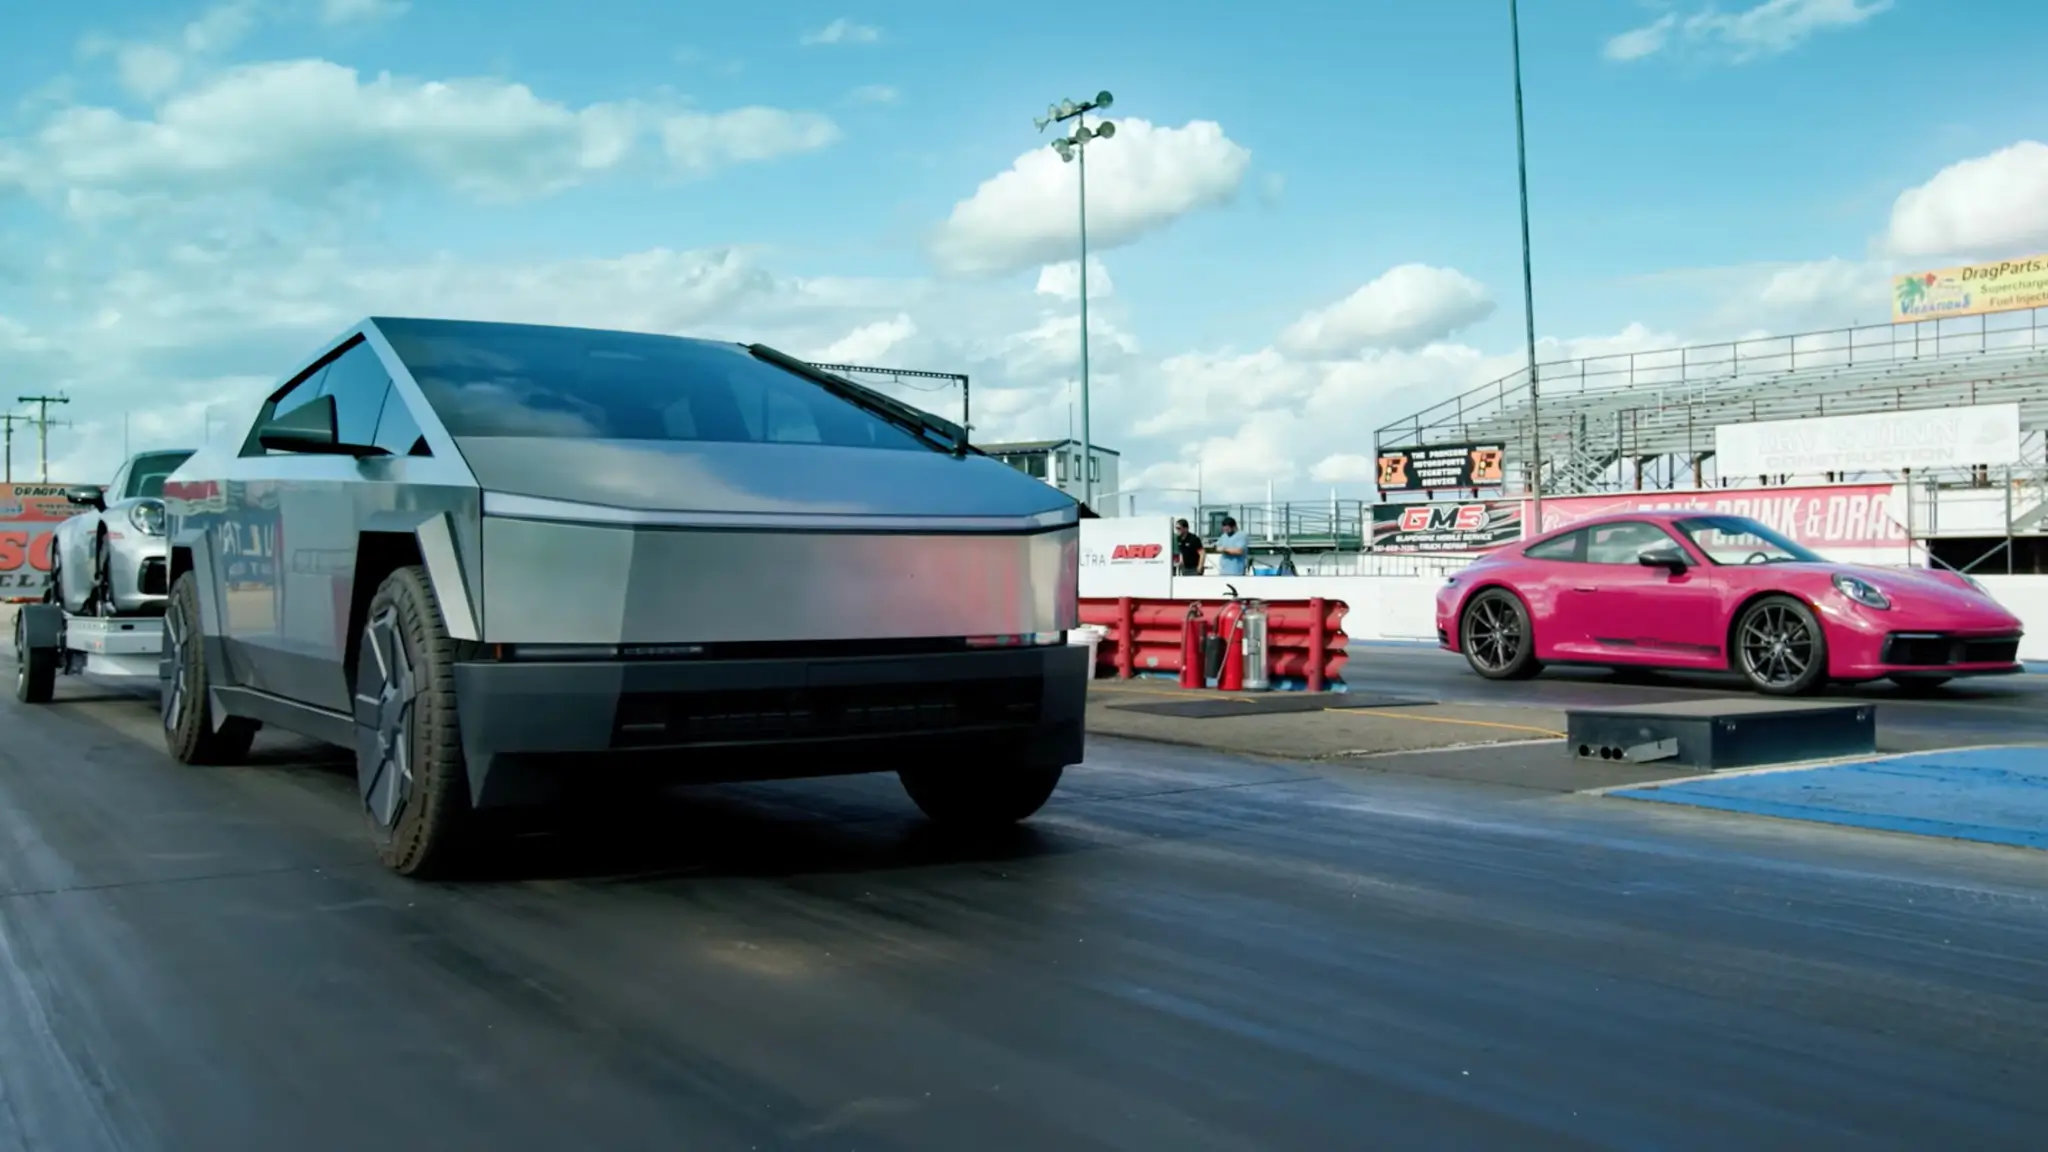 Tesla Cybertruck vs Porsche 911. Nova corrida tira todas as dúvidas